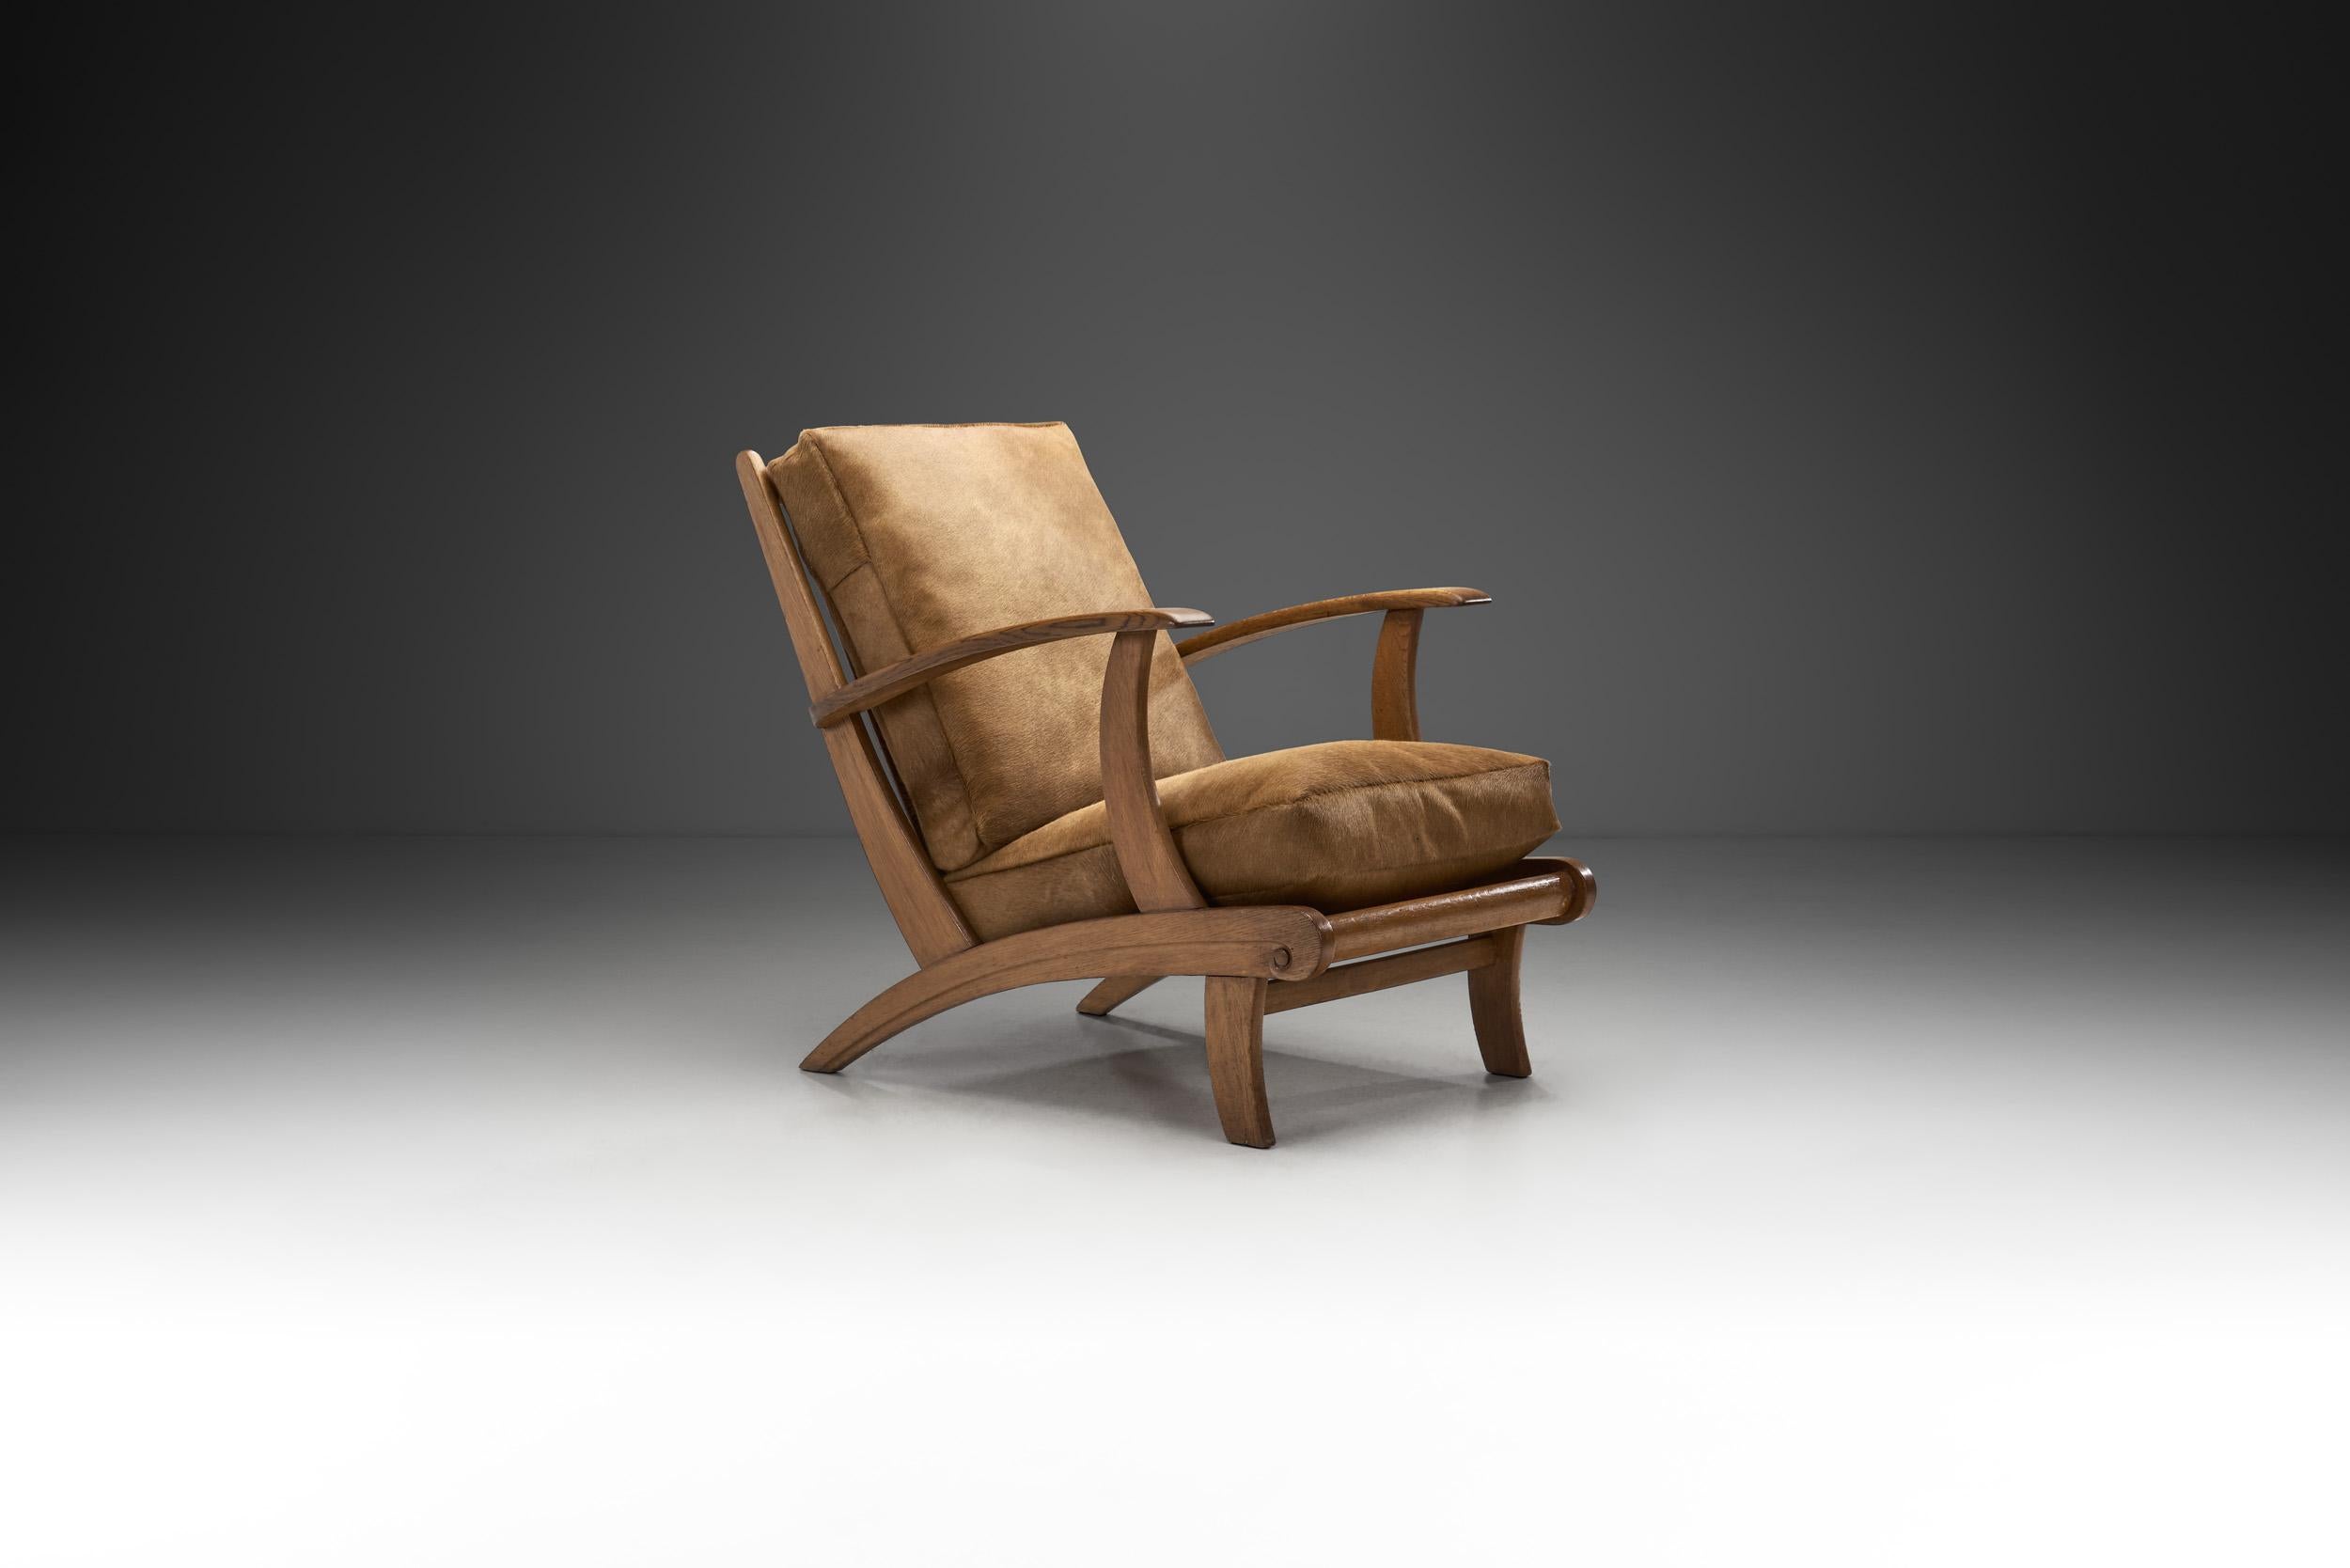 Cette chaise est pleine de caractéristiques et de détails exceptionnels qui en font un exemple unique du débordement créatif qui a défini le modernisme du milieu du siècle en Europe. Le design sculptural est associé à l'organicité du matériau et aux